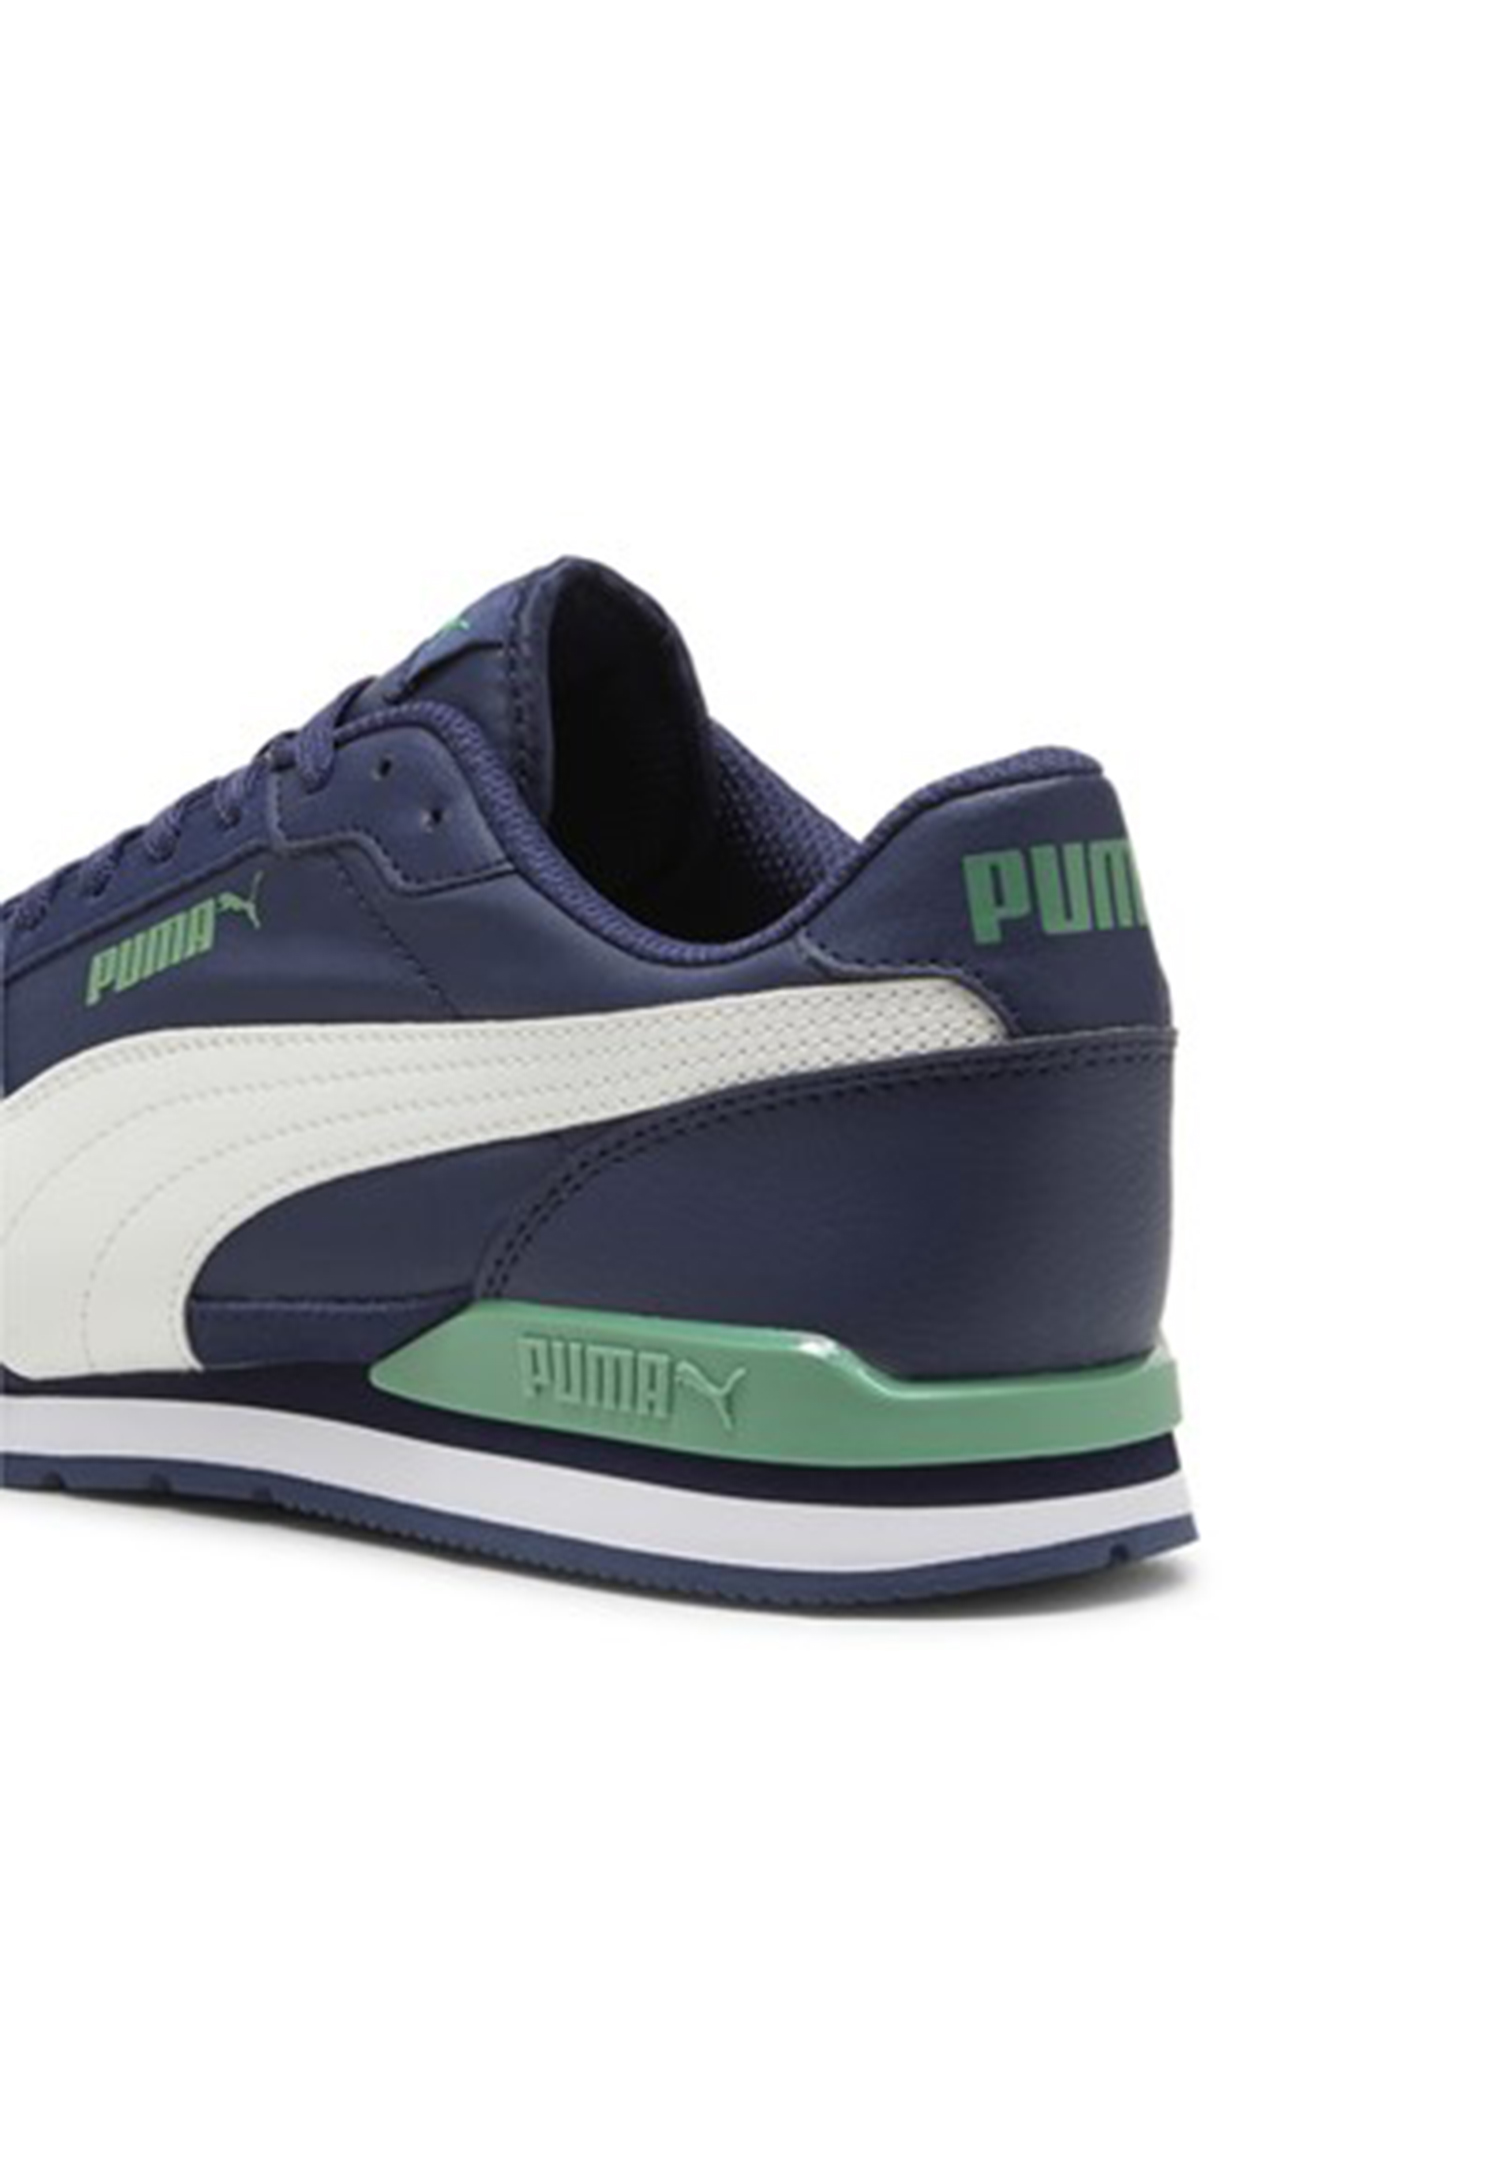 Puma ST Runner V3 NL Unisex Sneaker Turnschuhe 384857 25 blau